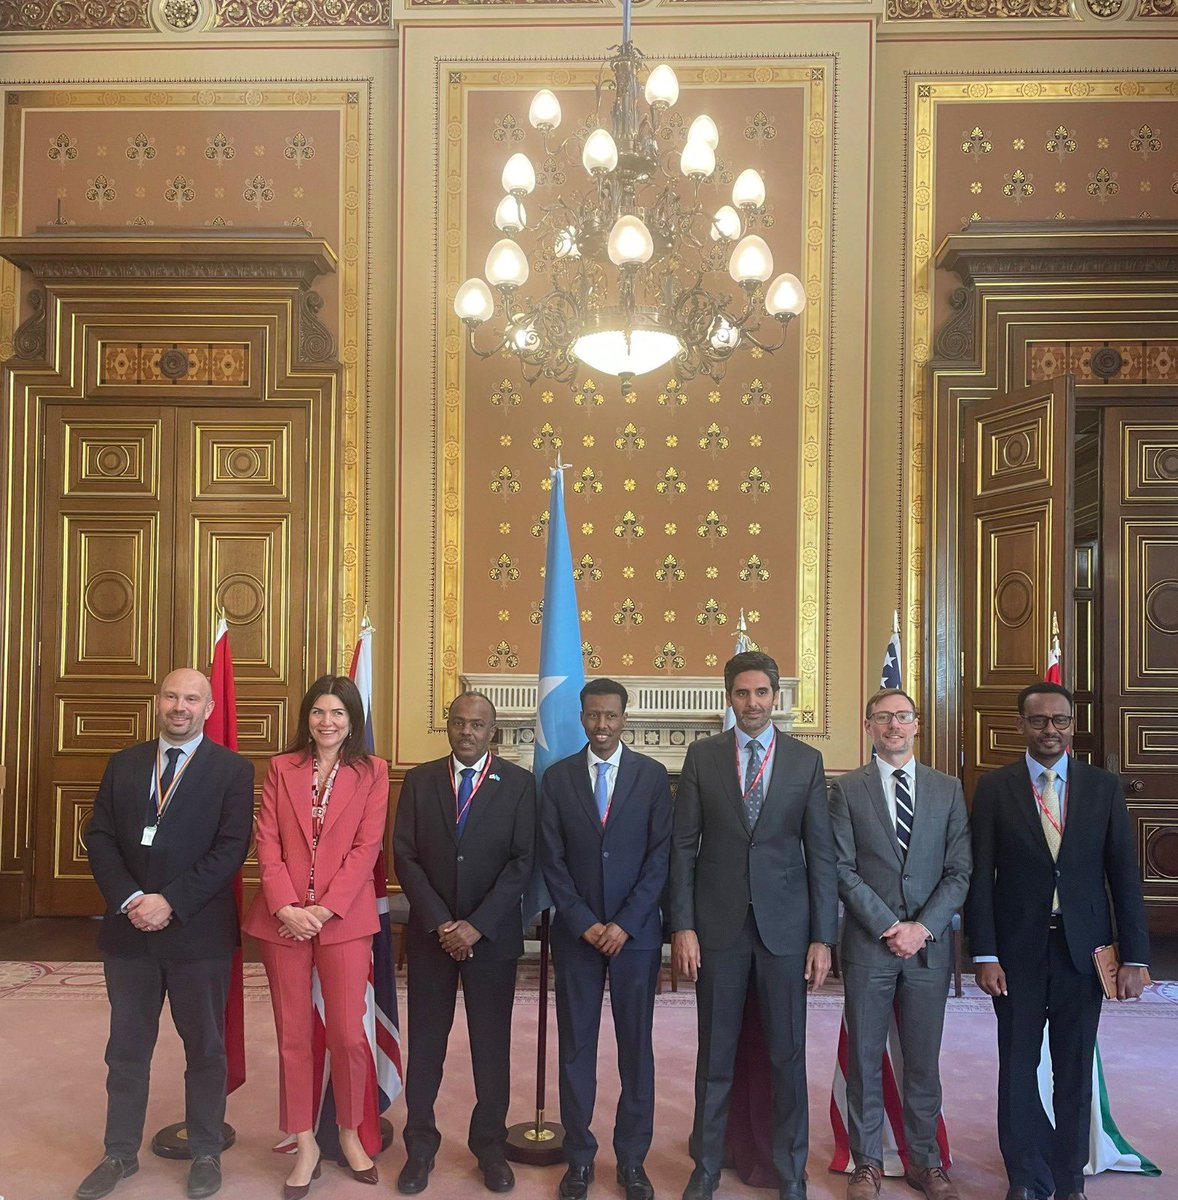 دولة قطر تشارك في الاجتماع السادس للمجموعة الخماسية بشأن الصومال

#الخارجية_القطرية